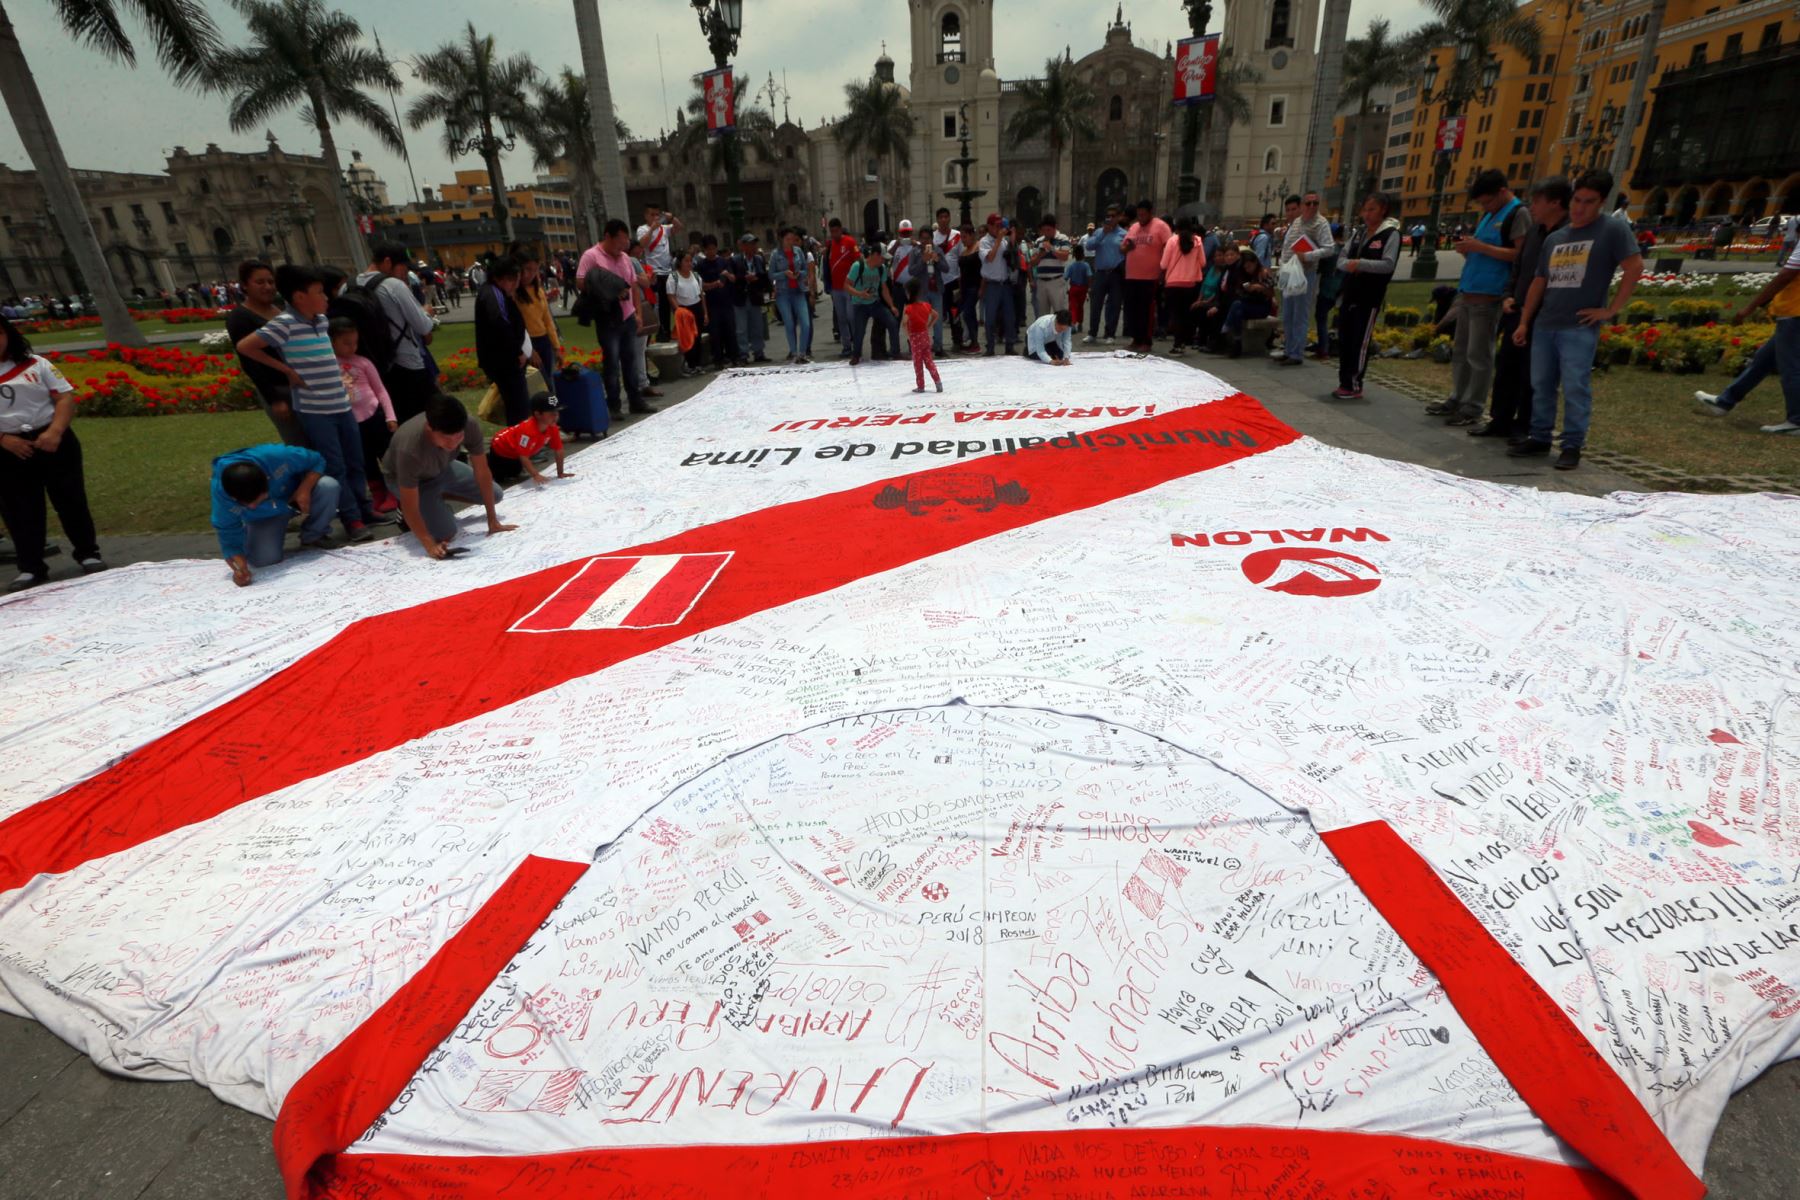 Decenas de hinchas se encuentran en la Plaza Mayor para estampar mensajes en gigantesco polo. Foto: ANDINA/Dante Zegarra.